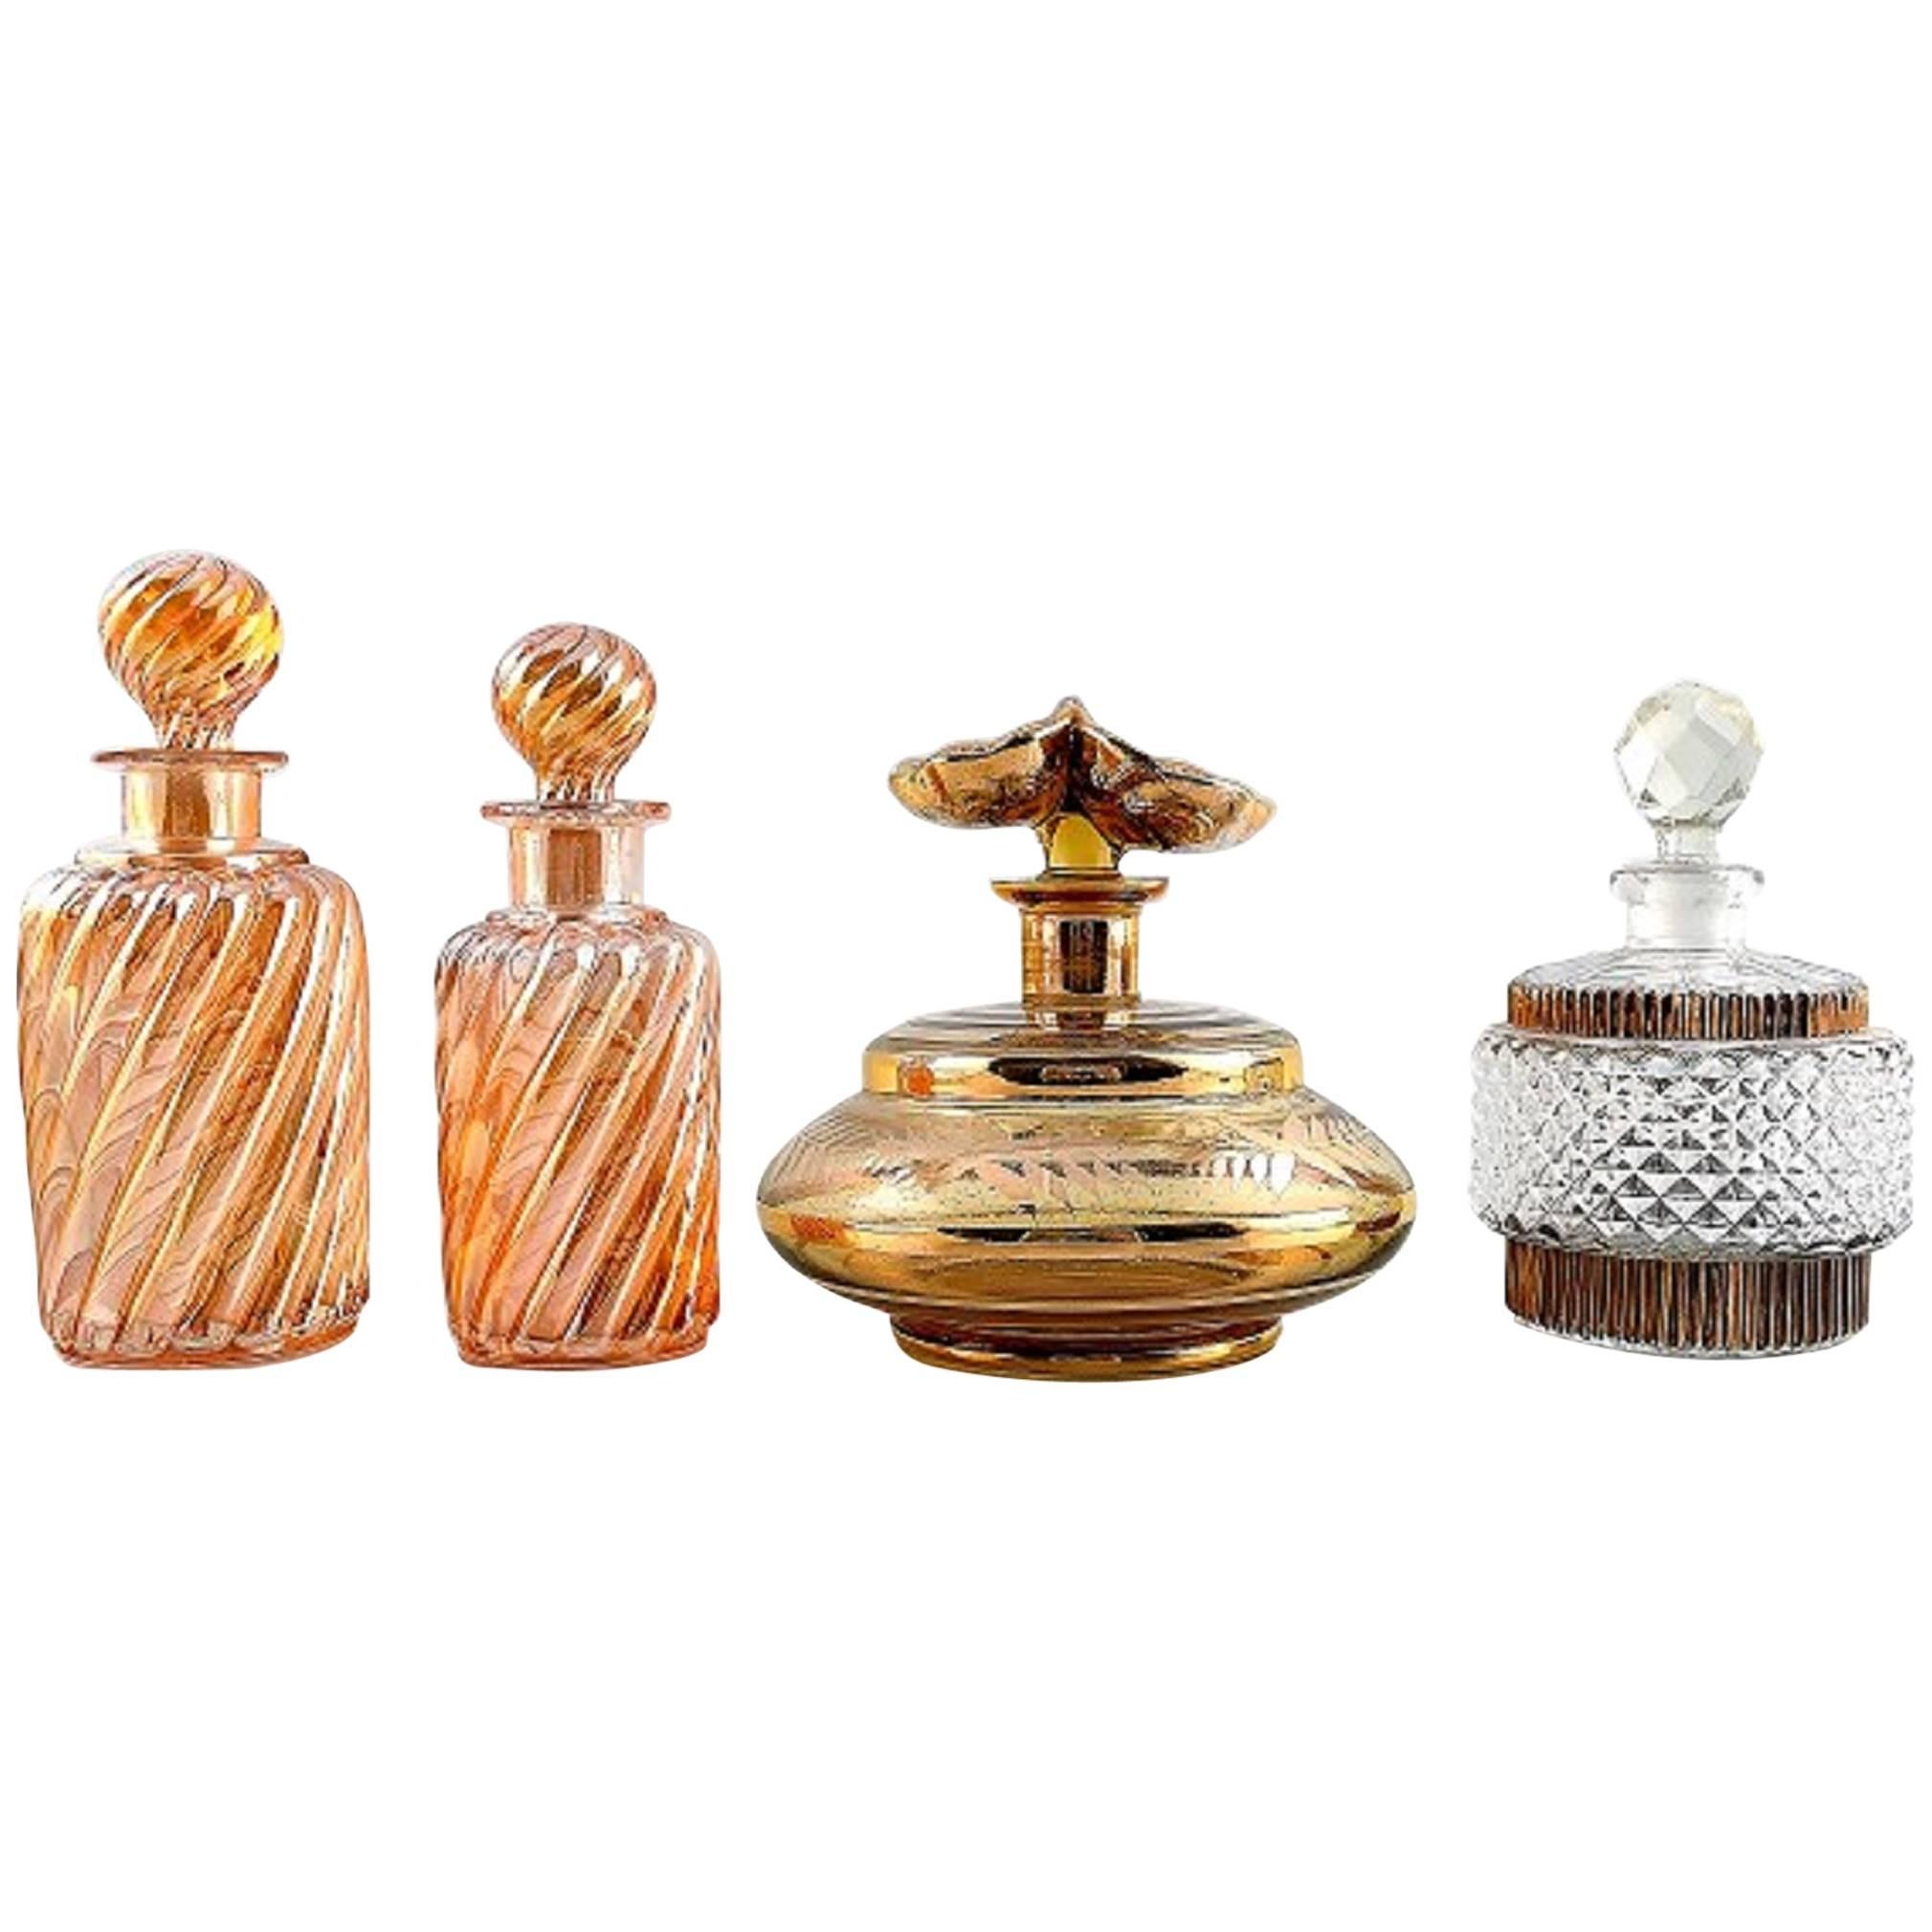 Four Perfume Bottles, Art Glass